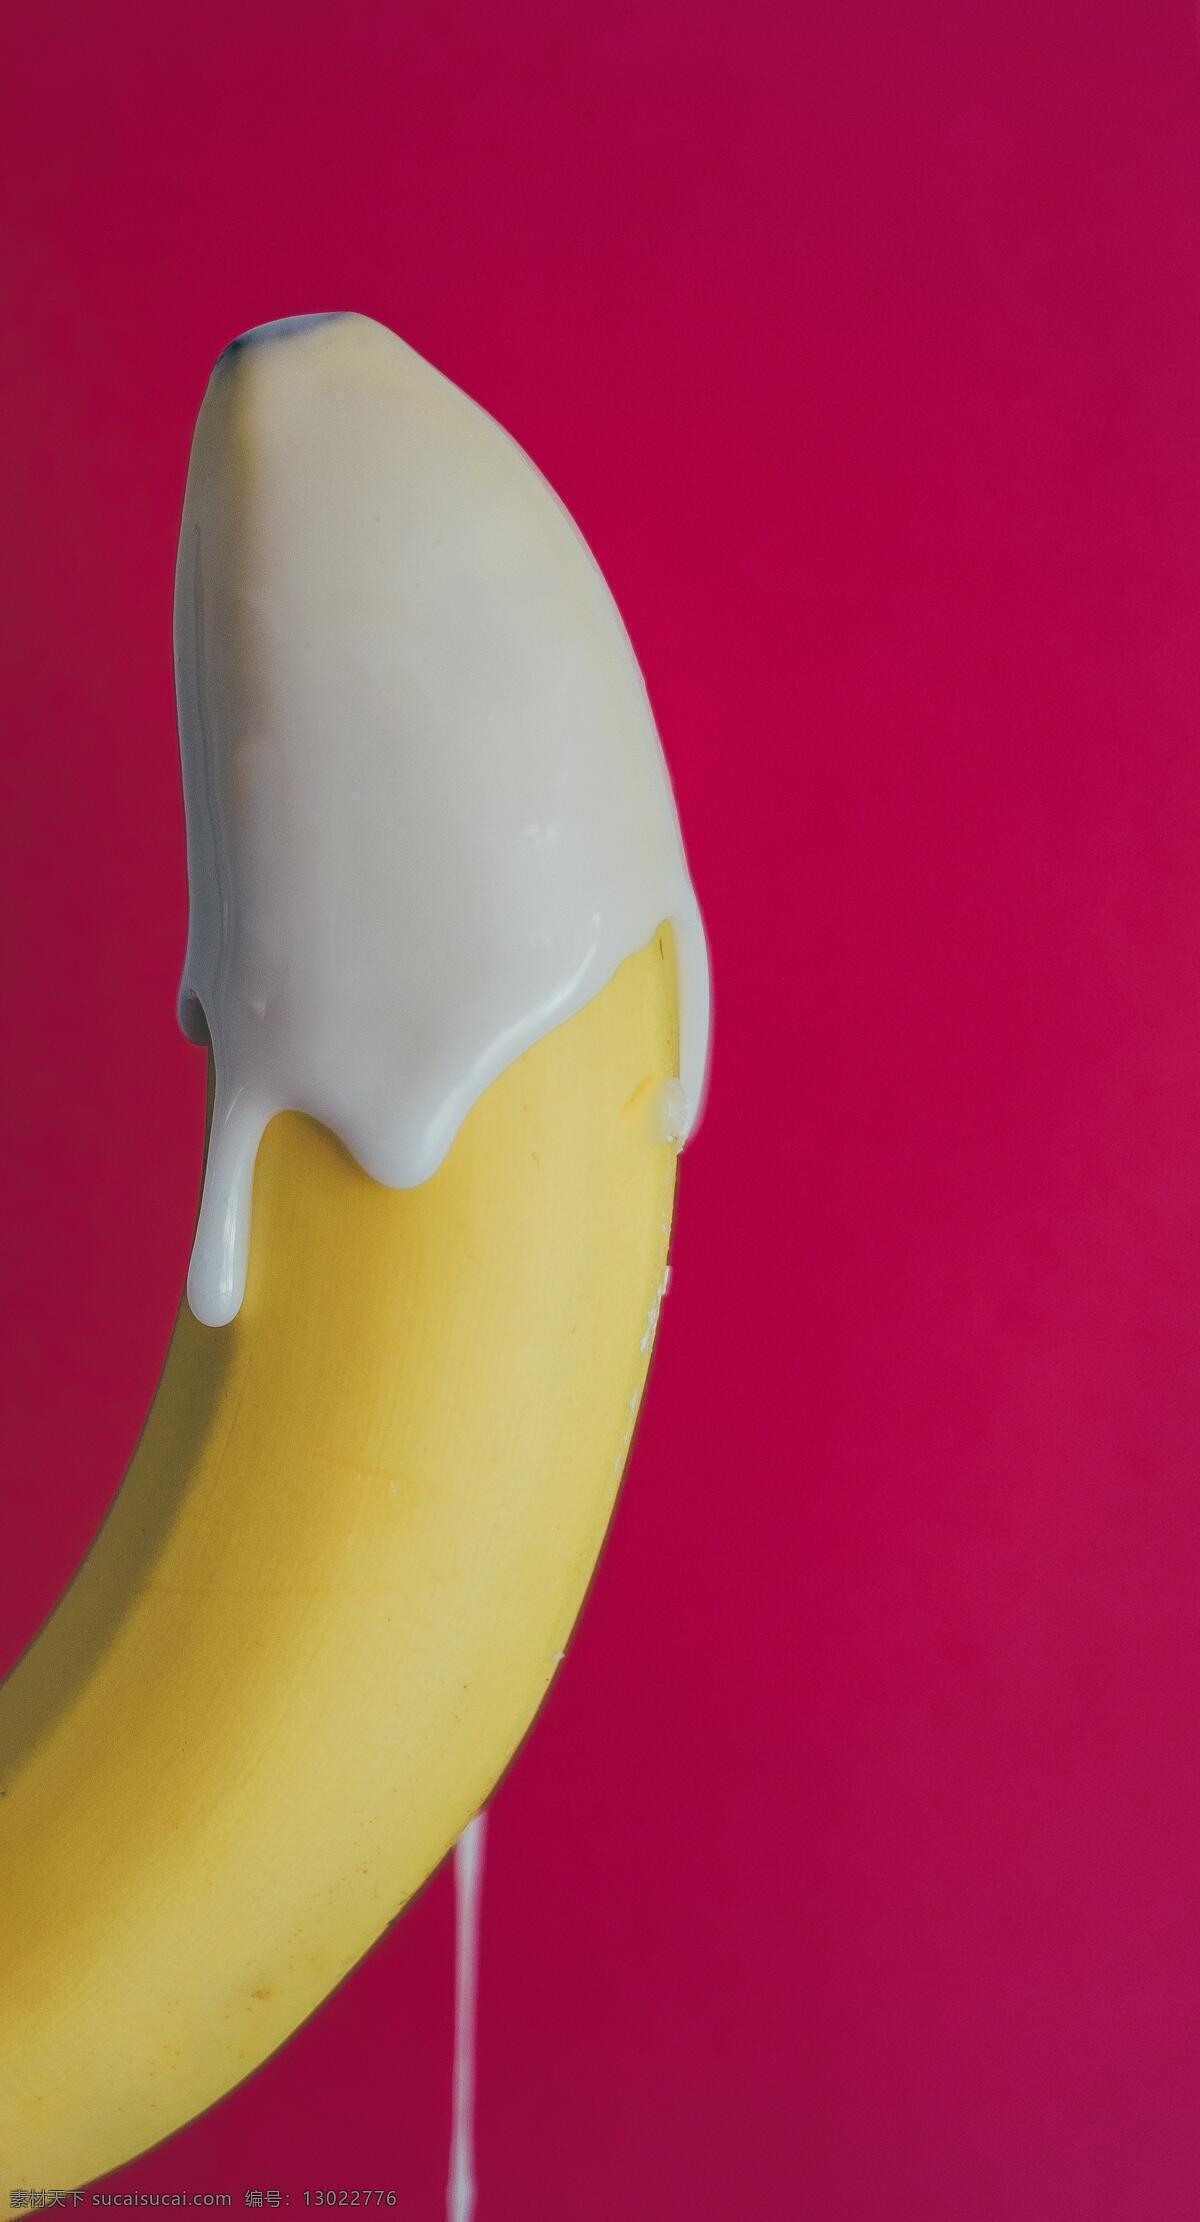 香蕉牛奶 香蕉 牛奶 流下 滴 流淌 器官 男性 性安全 安全 性 性暗示 创意 比喻 广告 海报 暗示 两性 关系 生物世界 水果